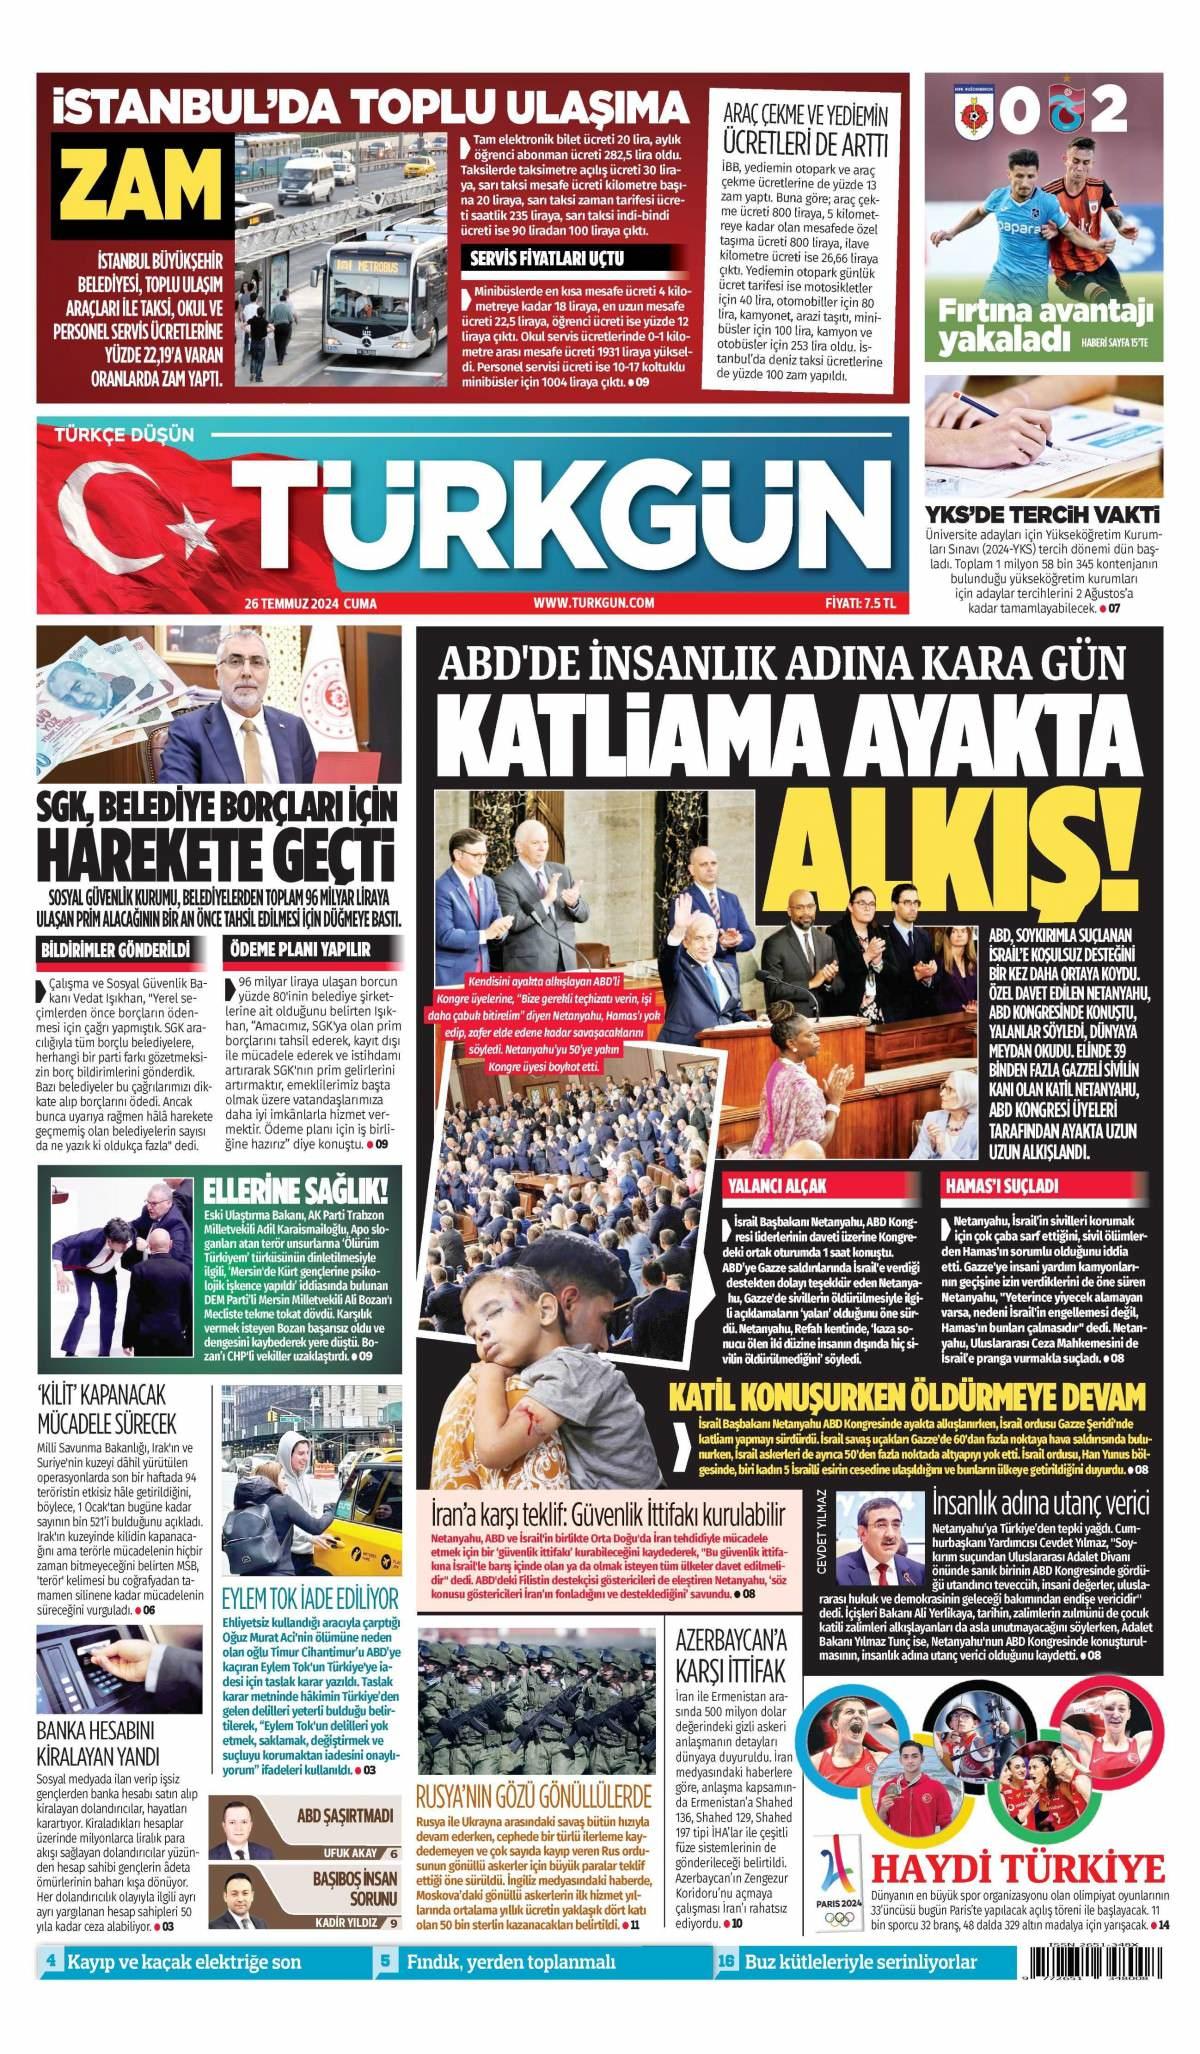 Türkgün Gazetesi İlk Sayfası